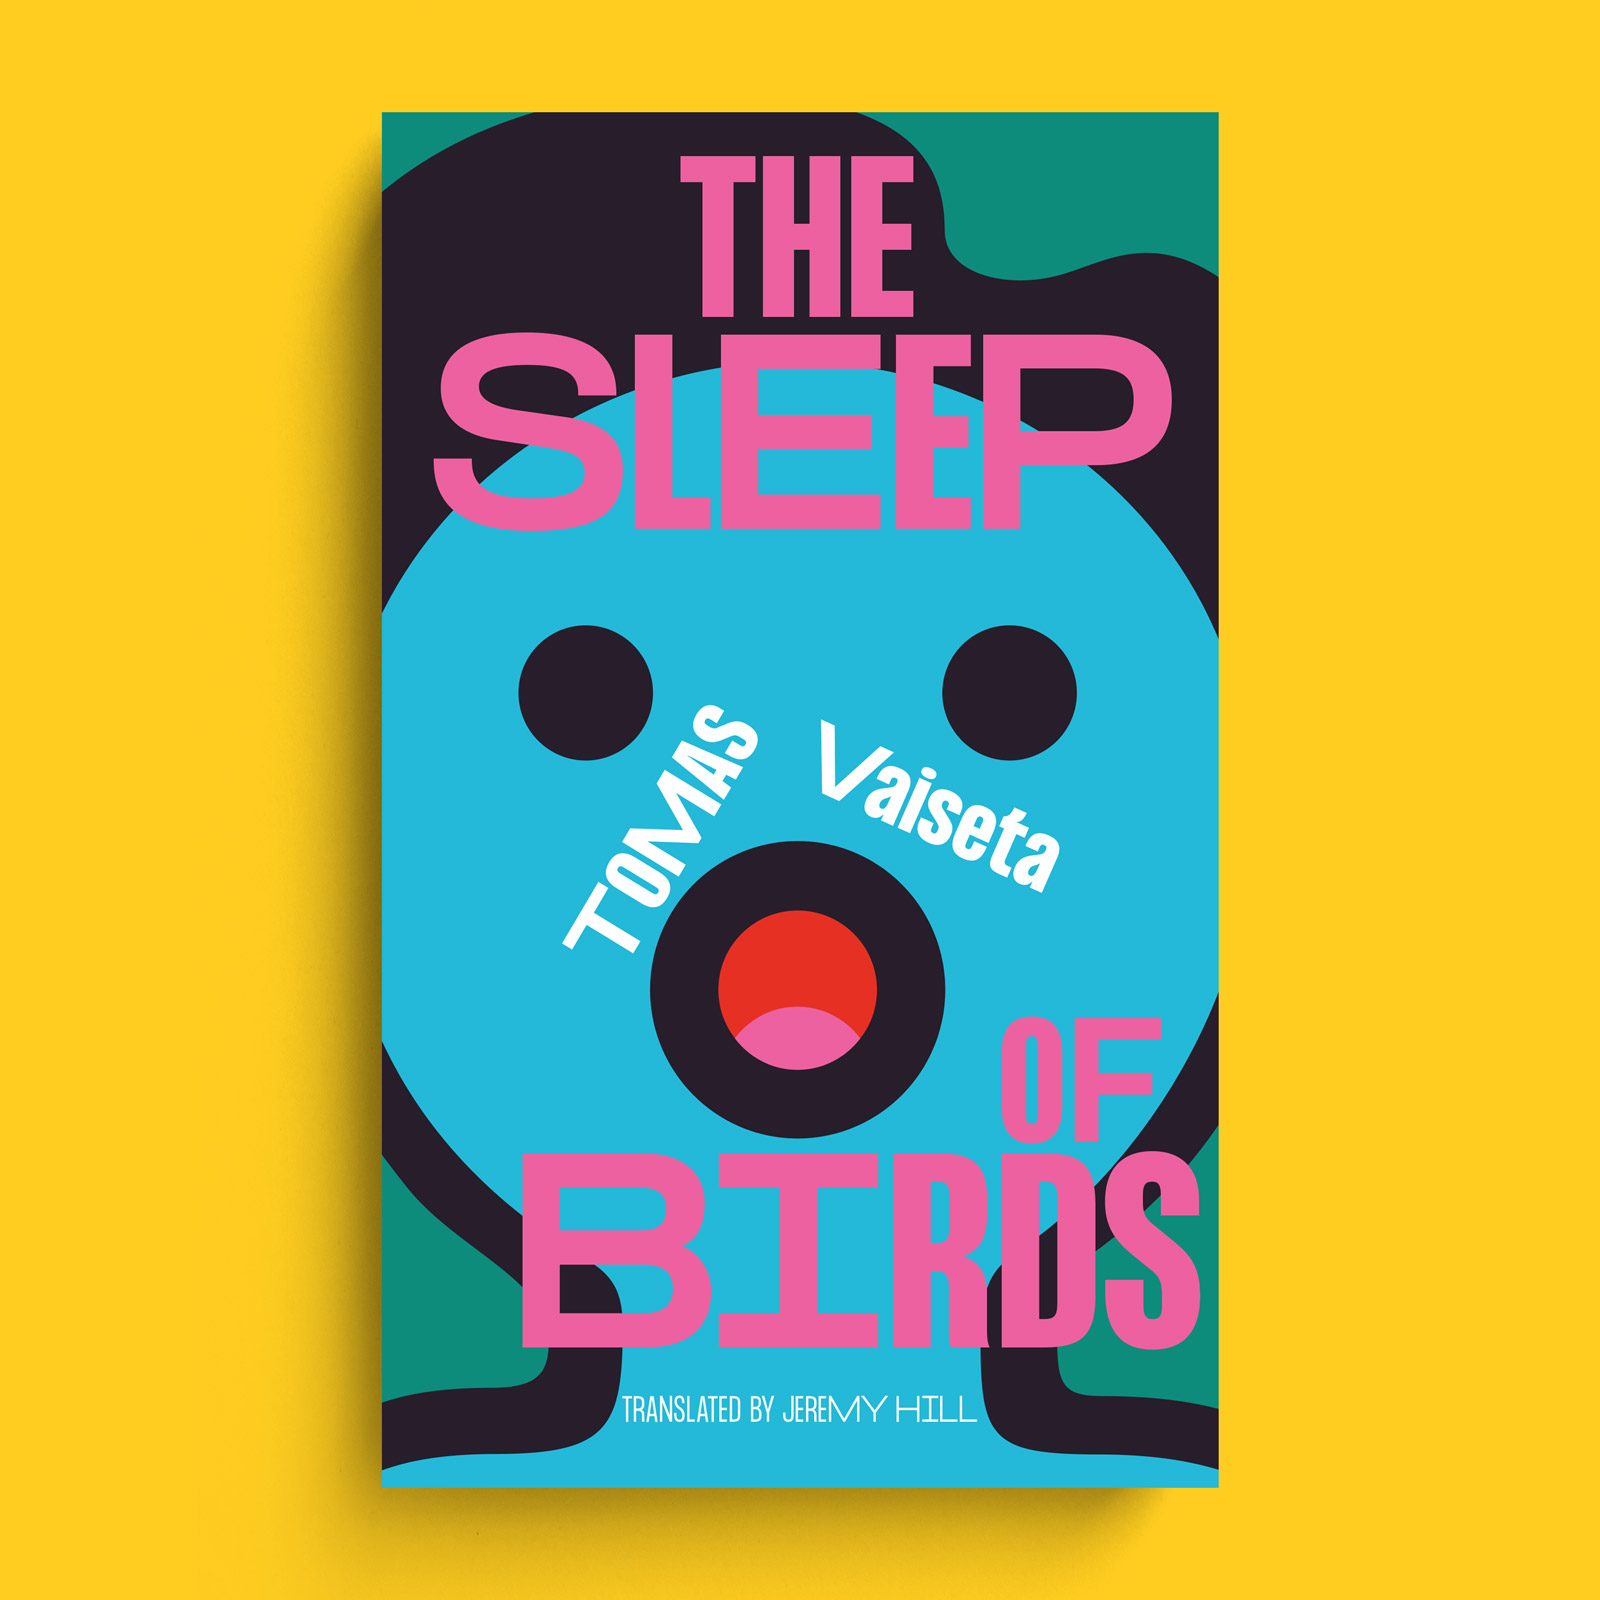 The Sleep of Birds Book Cover Design